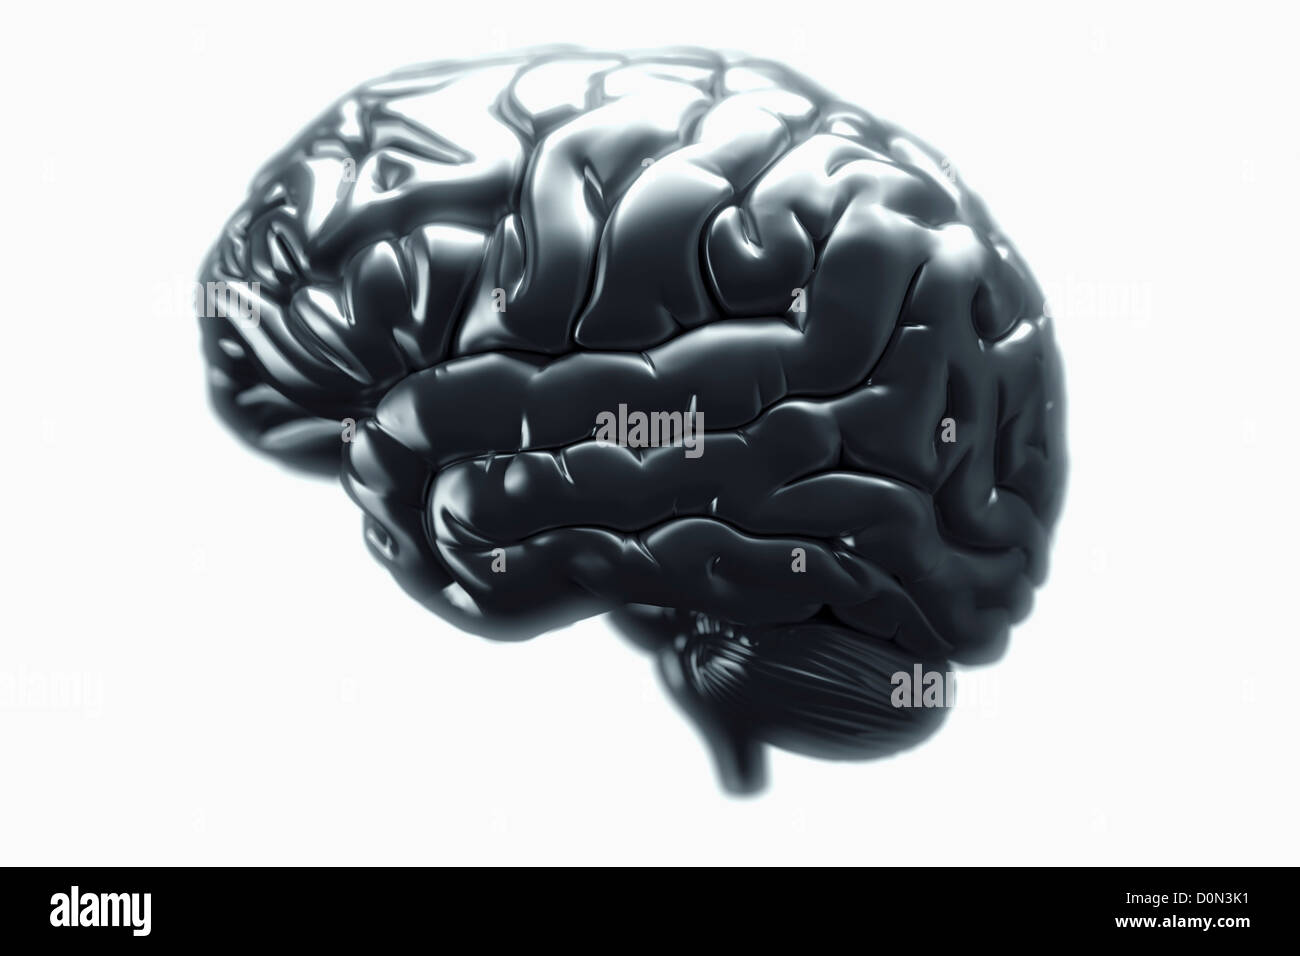 Una vista laterale di un cervello metallico. Gli emisferi cerebrali, cervelletto e tronco cerebrale sono visibili. Foto Stock